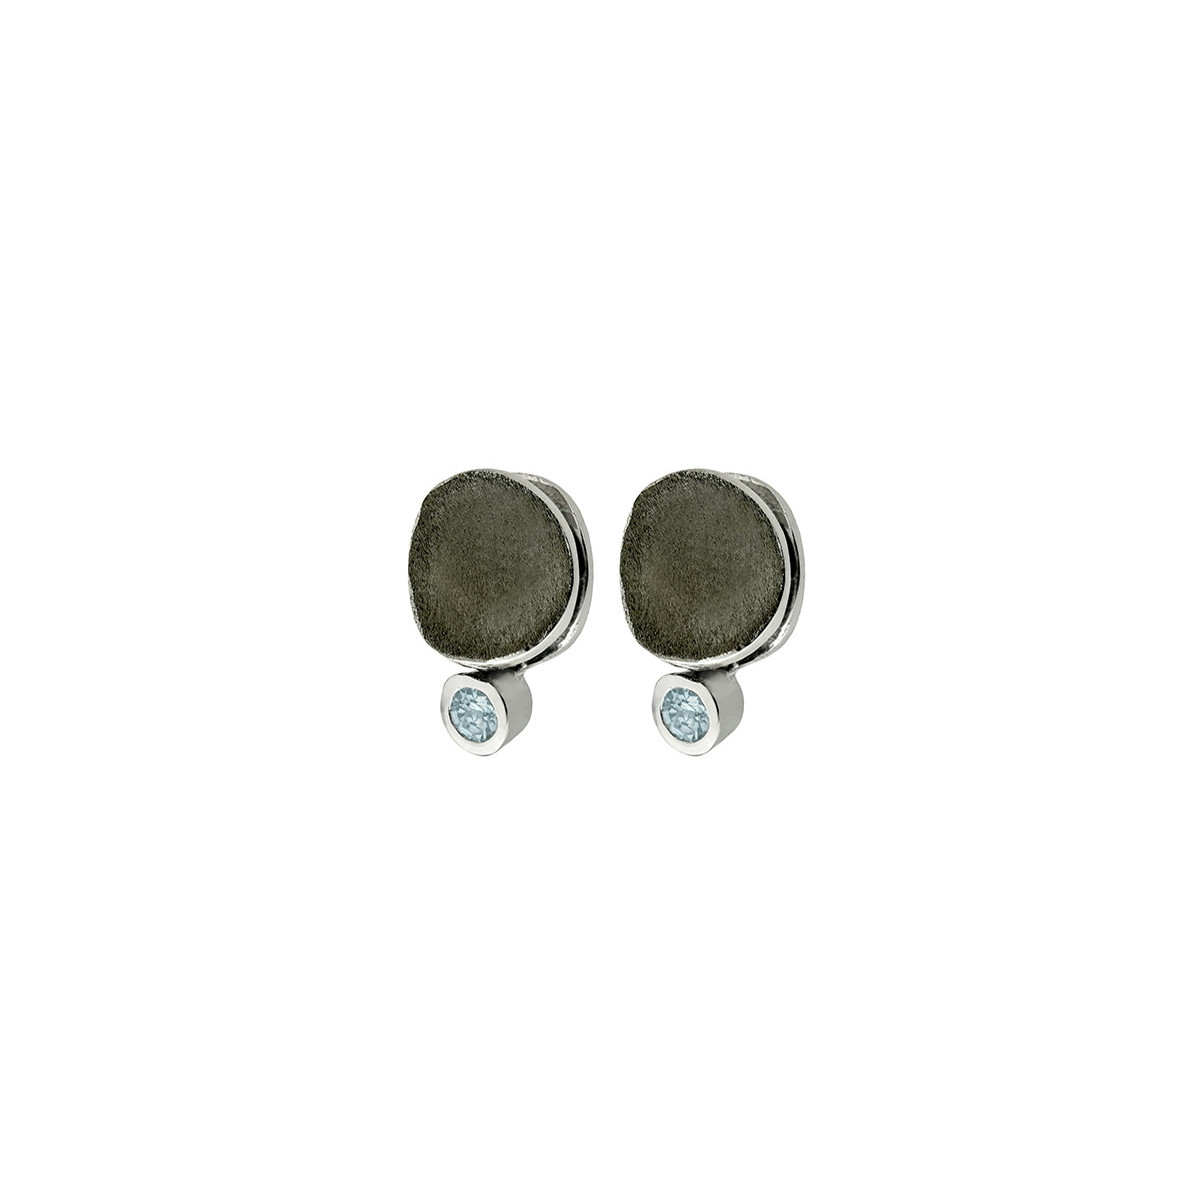 MOON Earrings in Silver.  Black Ruthenium